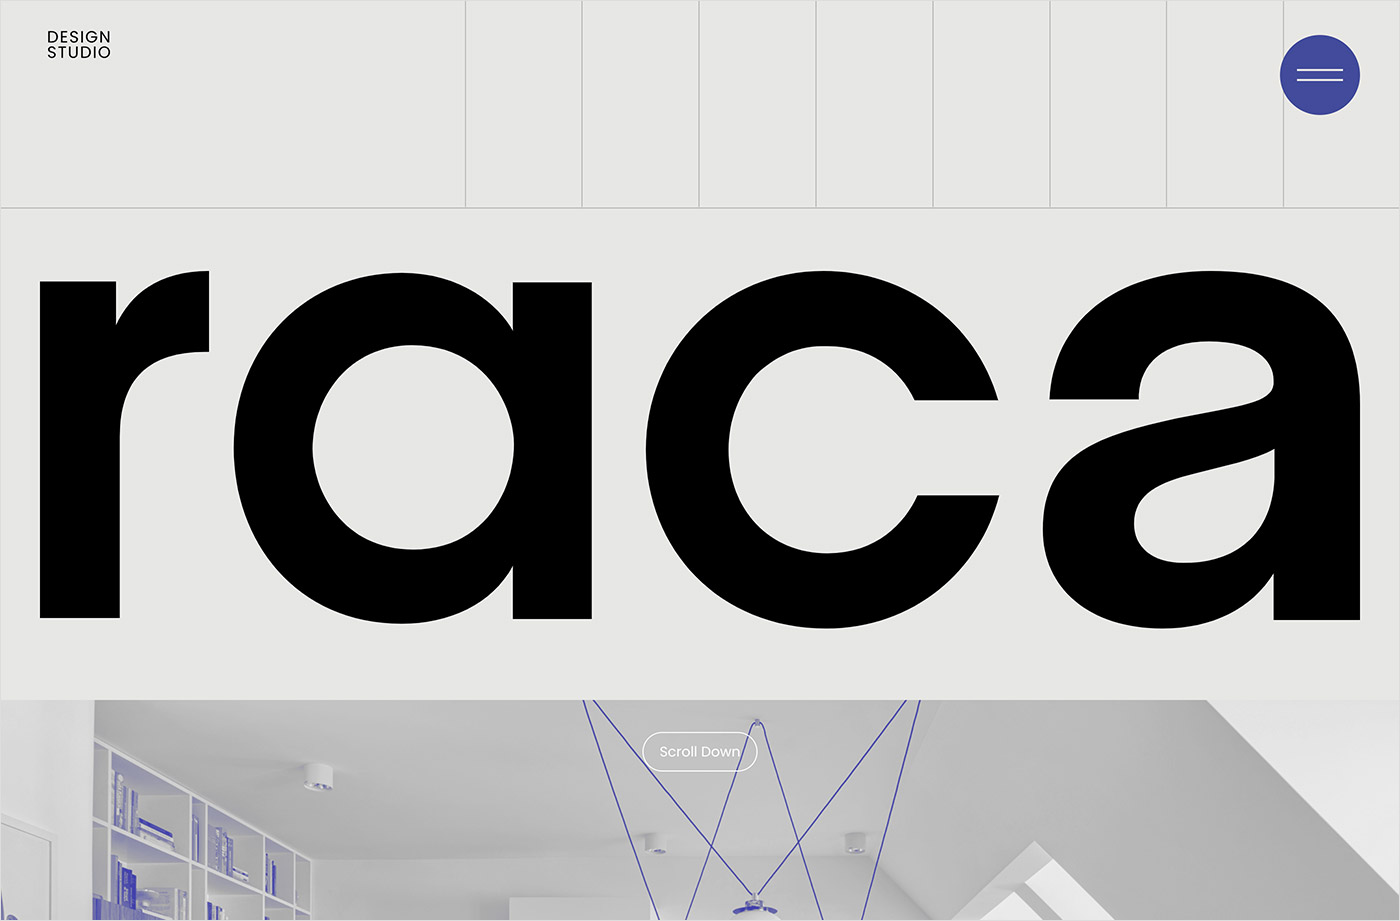 Raca Design Studioウェブサイトの画面キャプチャ画像